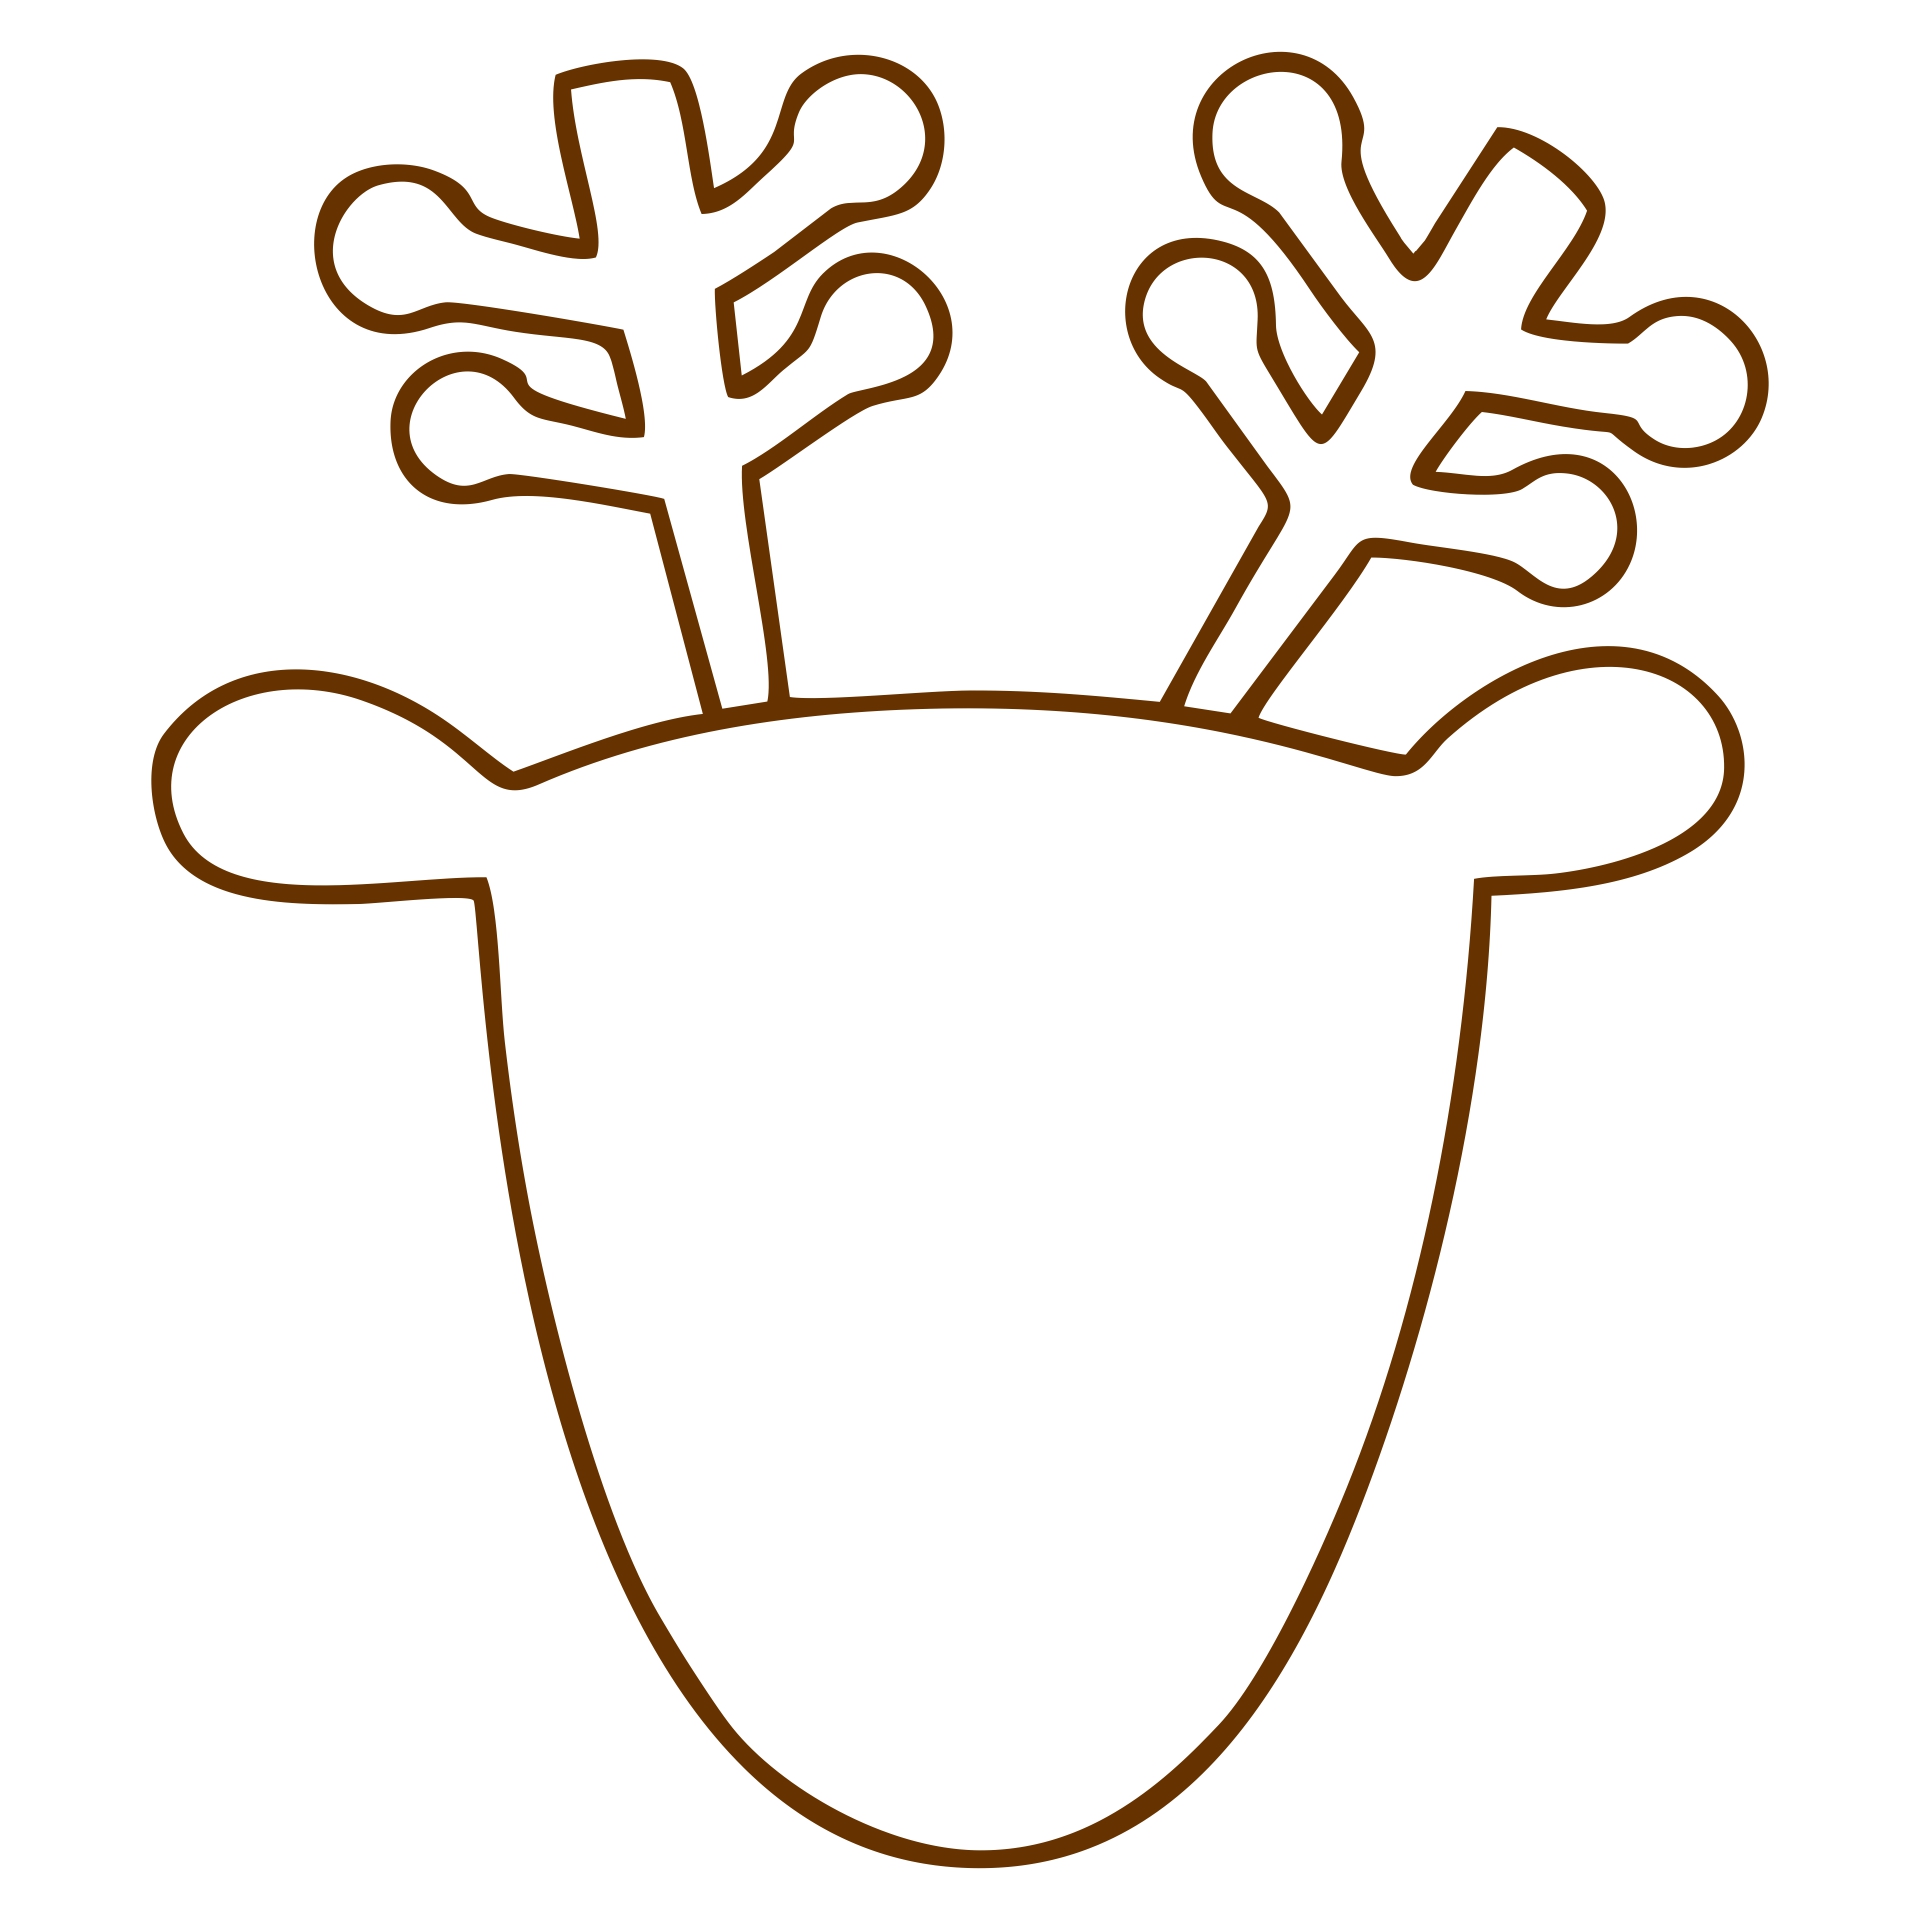 Free Printable Reindeer Template Image to u